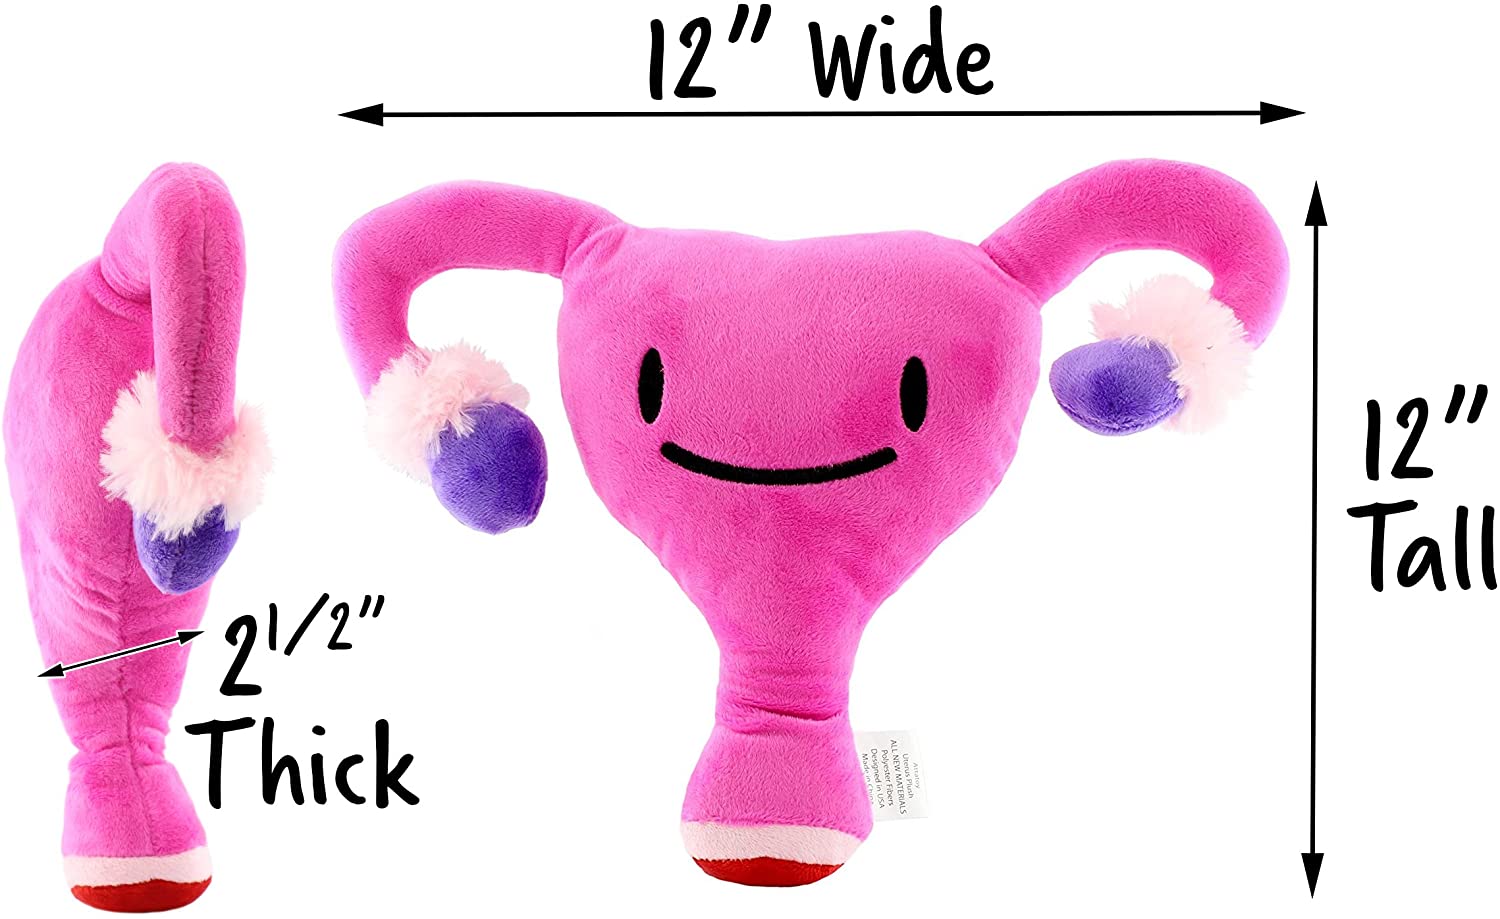 Uterus plush toy